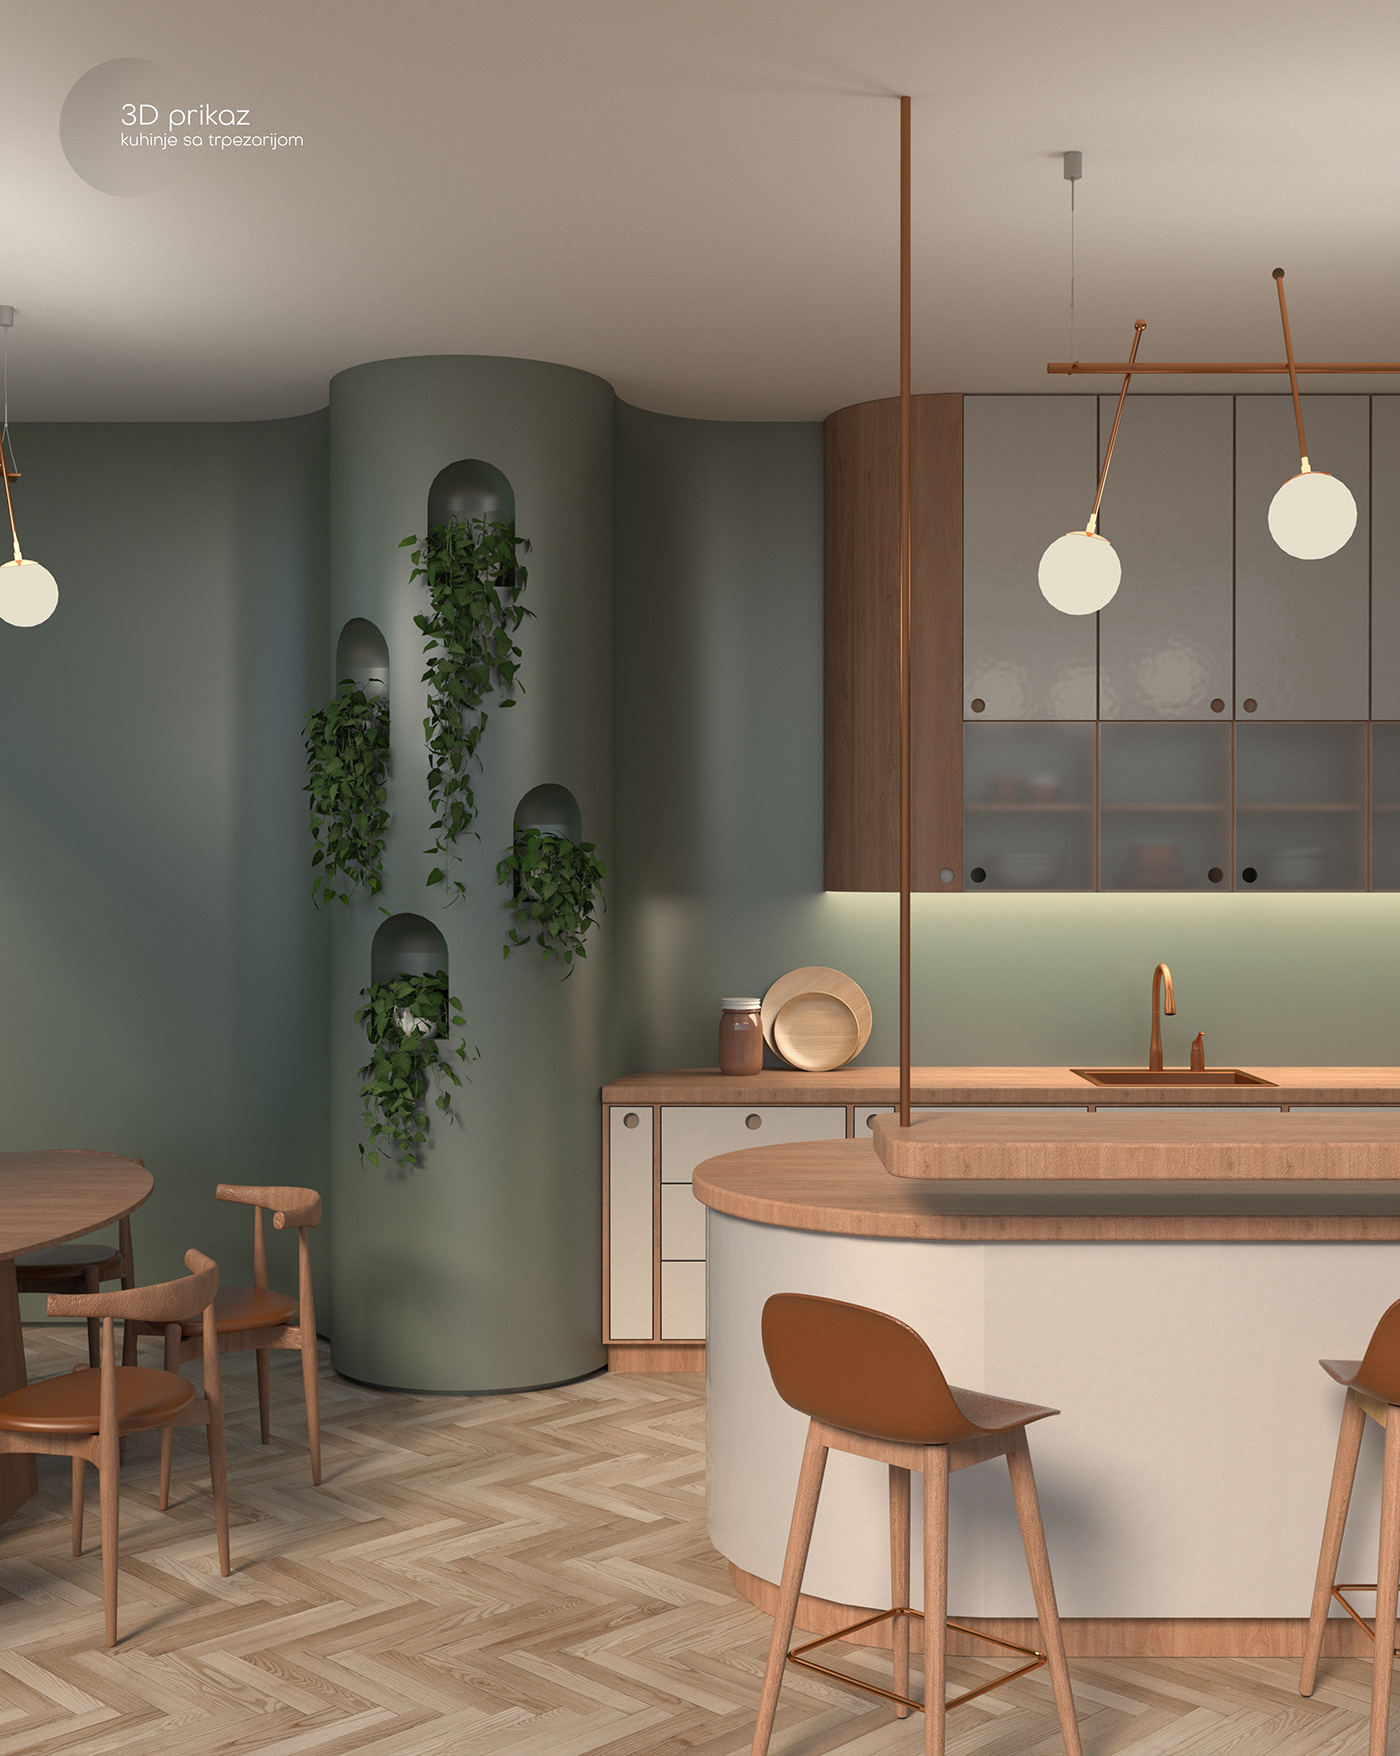 architecture interior design  kitchen interior Render SketchUP visualization vray